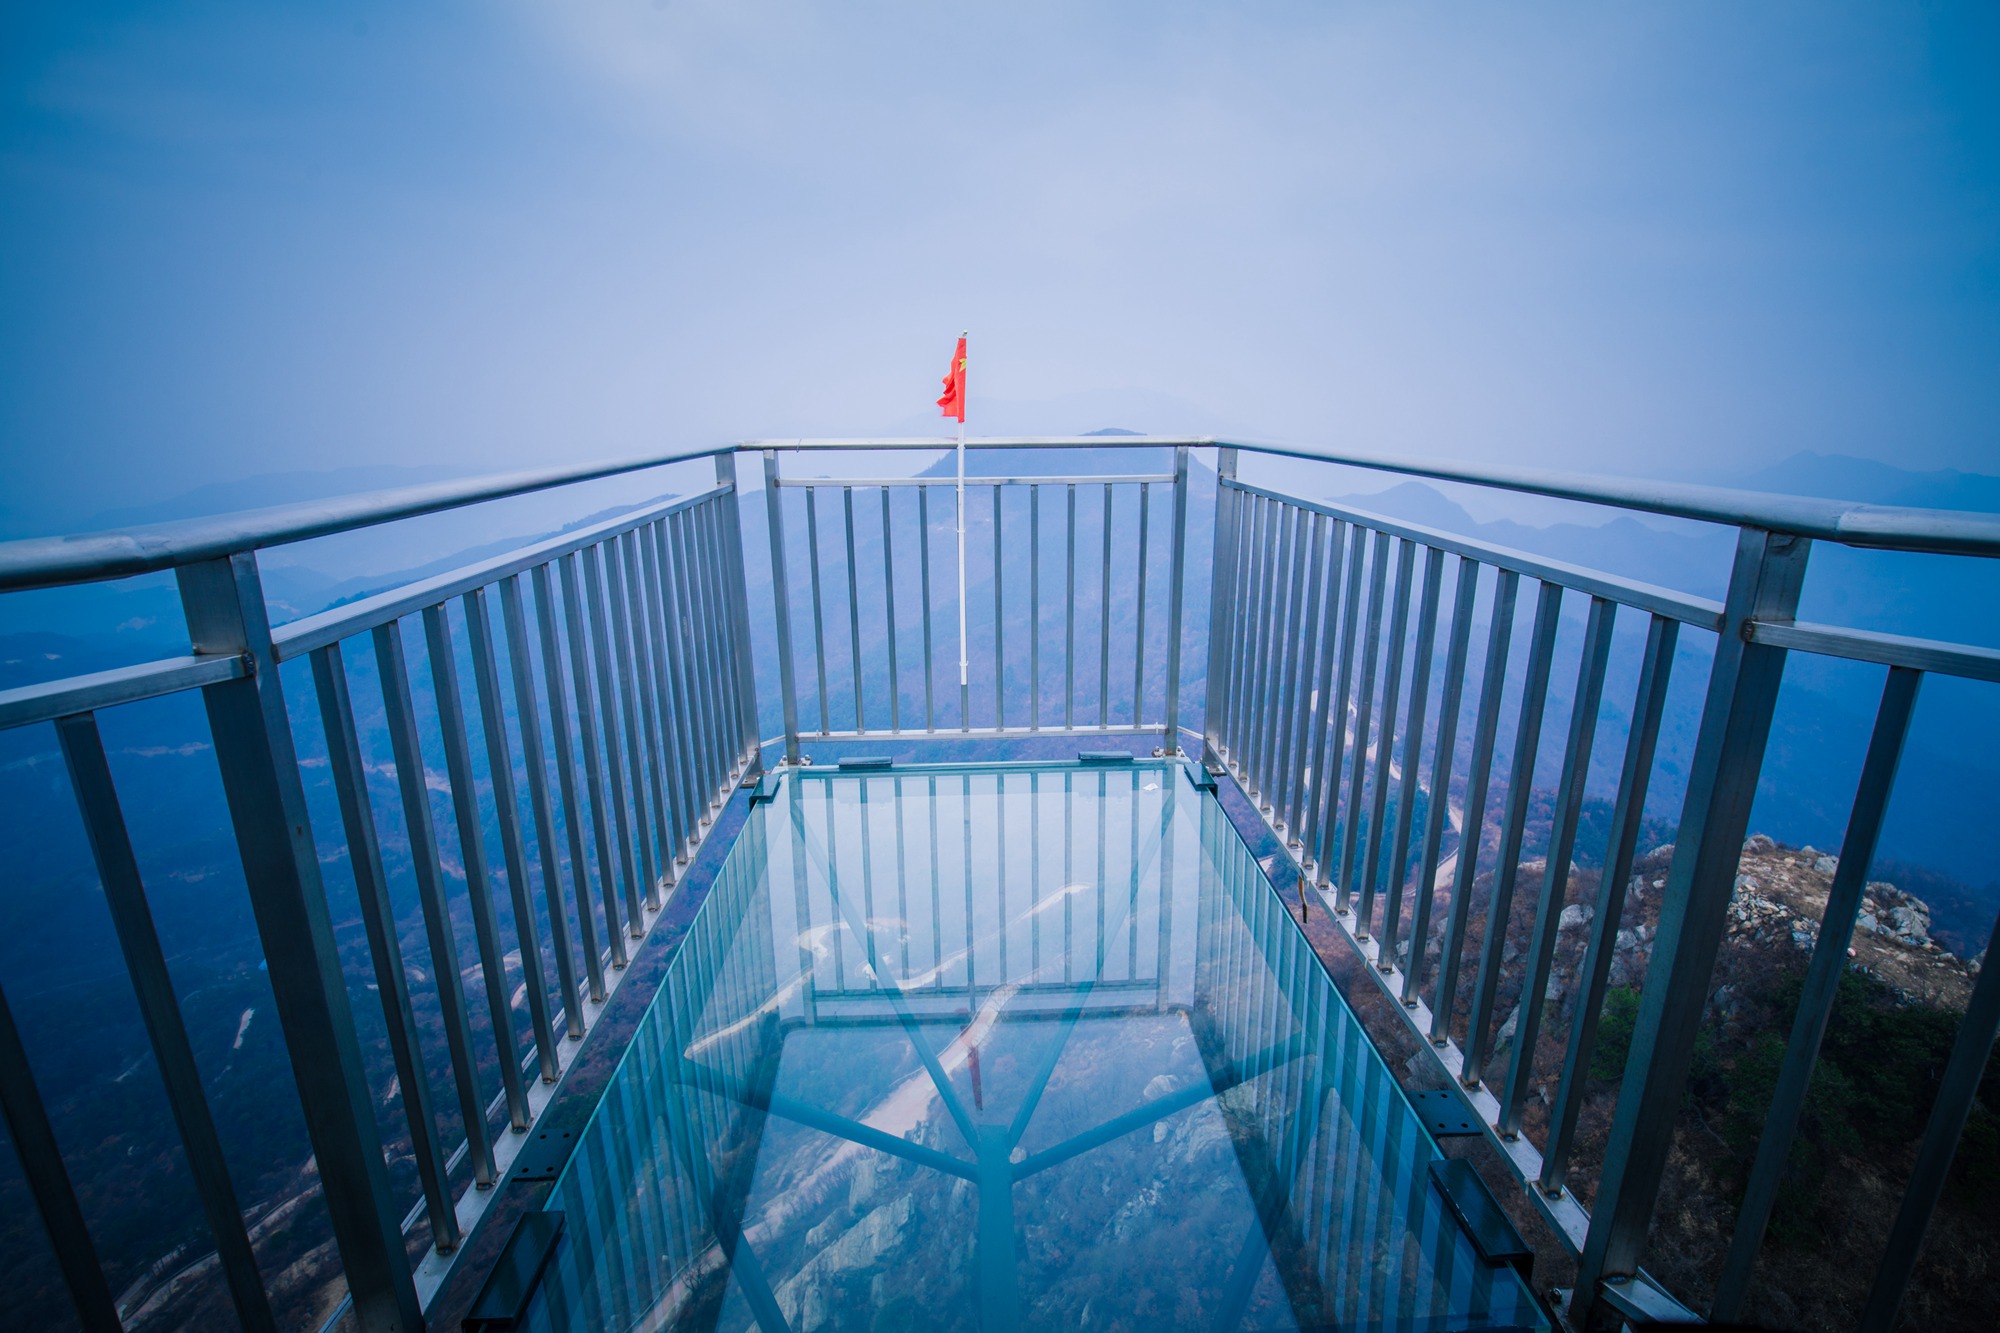 原创你知道吗?世界最长悬挑玻璃观景平台位于武汉之巅